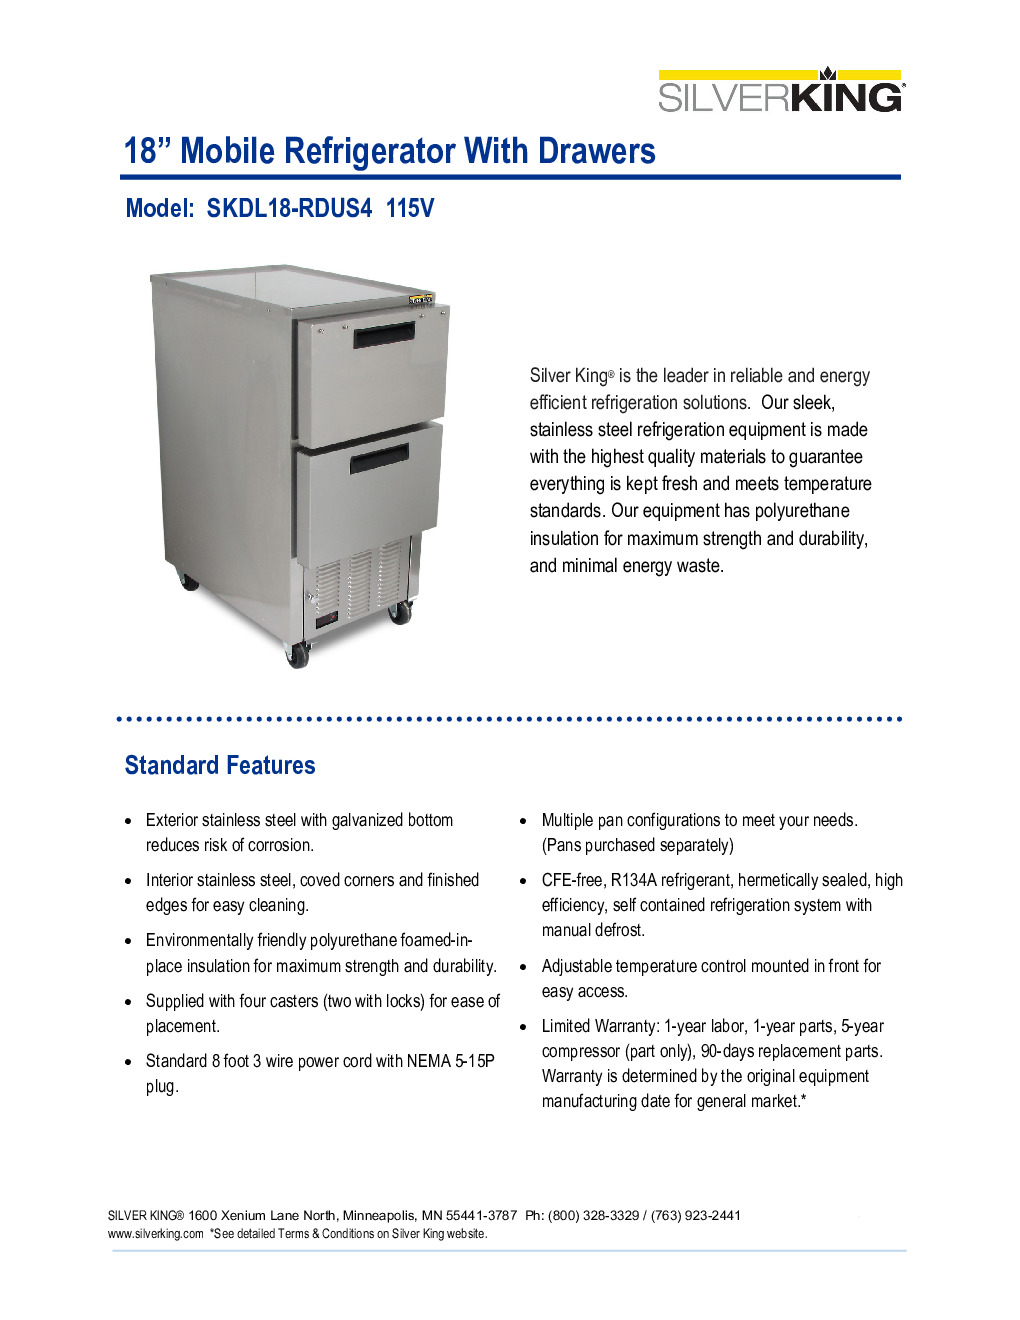 Silver King SKDL18-EDUS4 Refrigerated Lettuce Crisper Dispenser